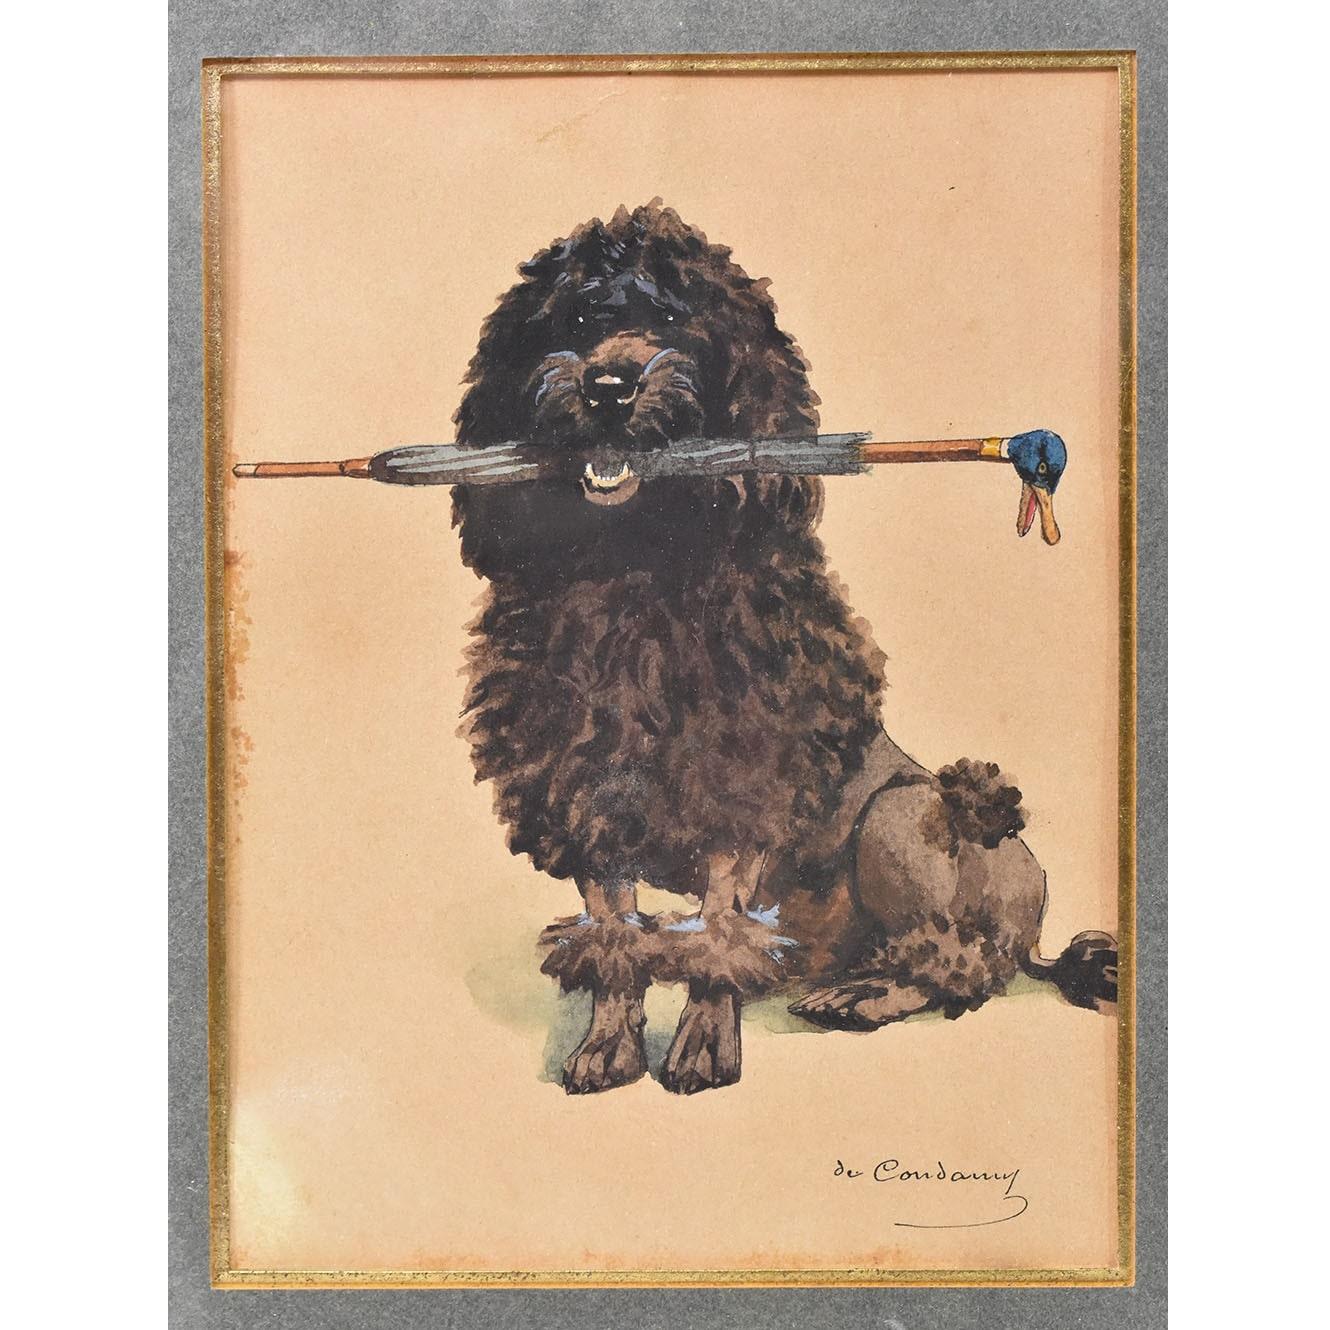 La catégorie Vieux portraits de chiens présente une petite peinture, une aquarelle sur papier avec
le portrait d'un chien caniche noir, fin du 19e siècle.  

Il s'agit d'un portrait agréable d'un petit chien, un caniche à poil noir 
portant un petit